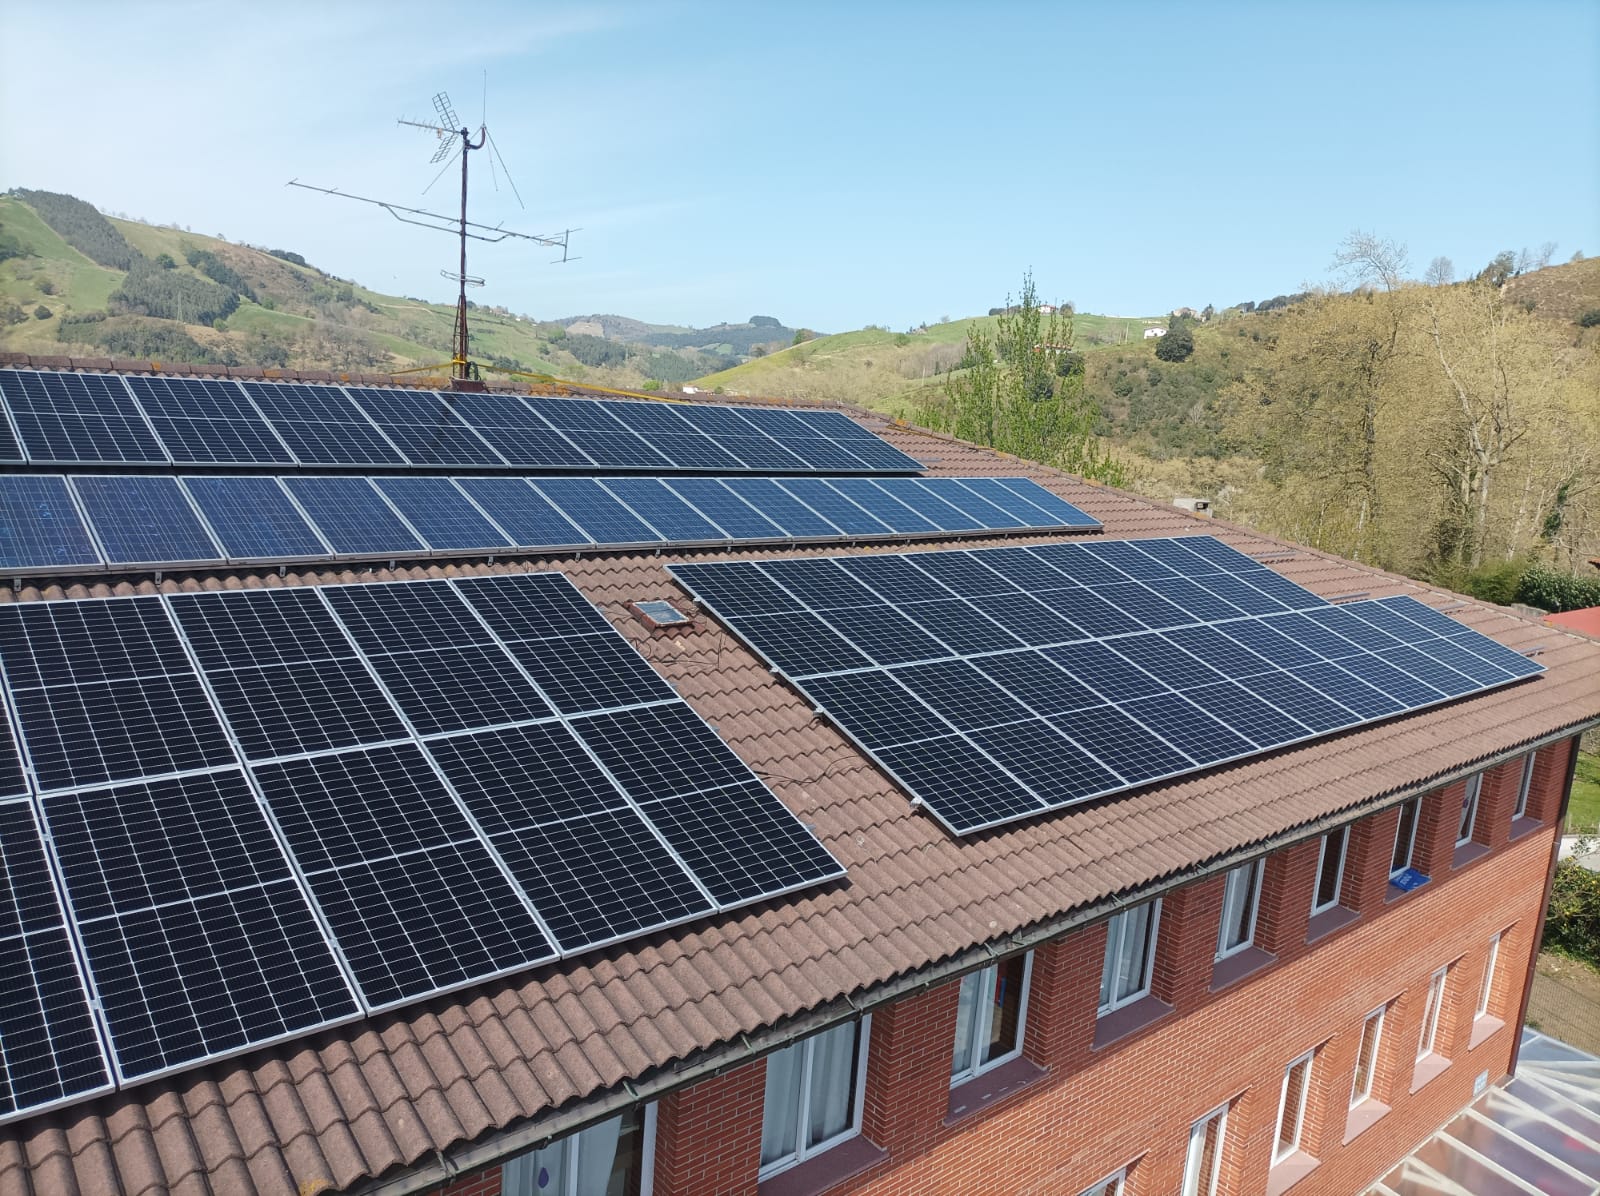 GEK Aizarnazabal: Eskolako instalazio fotovoltaikoa